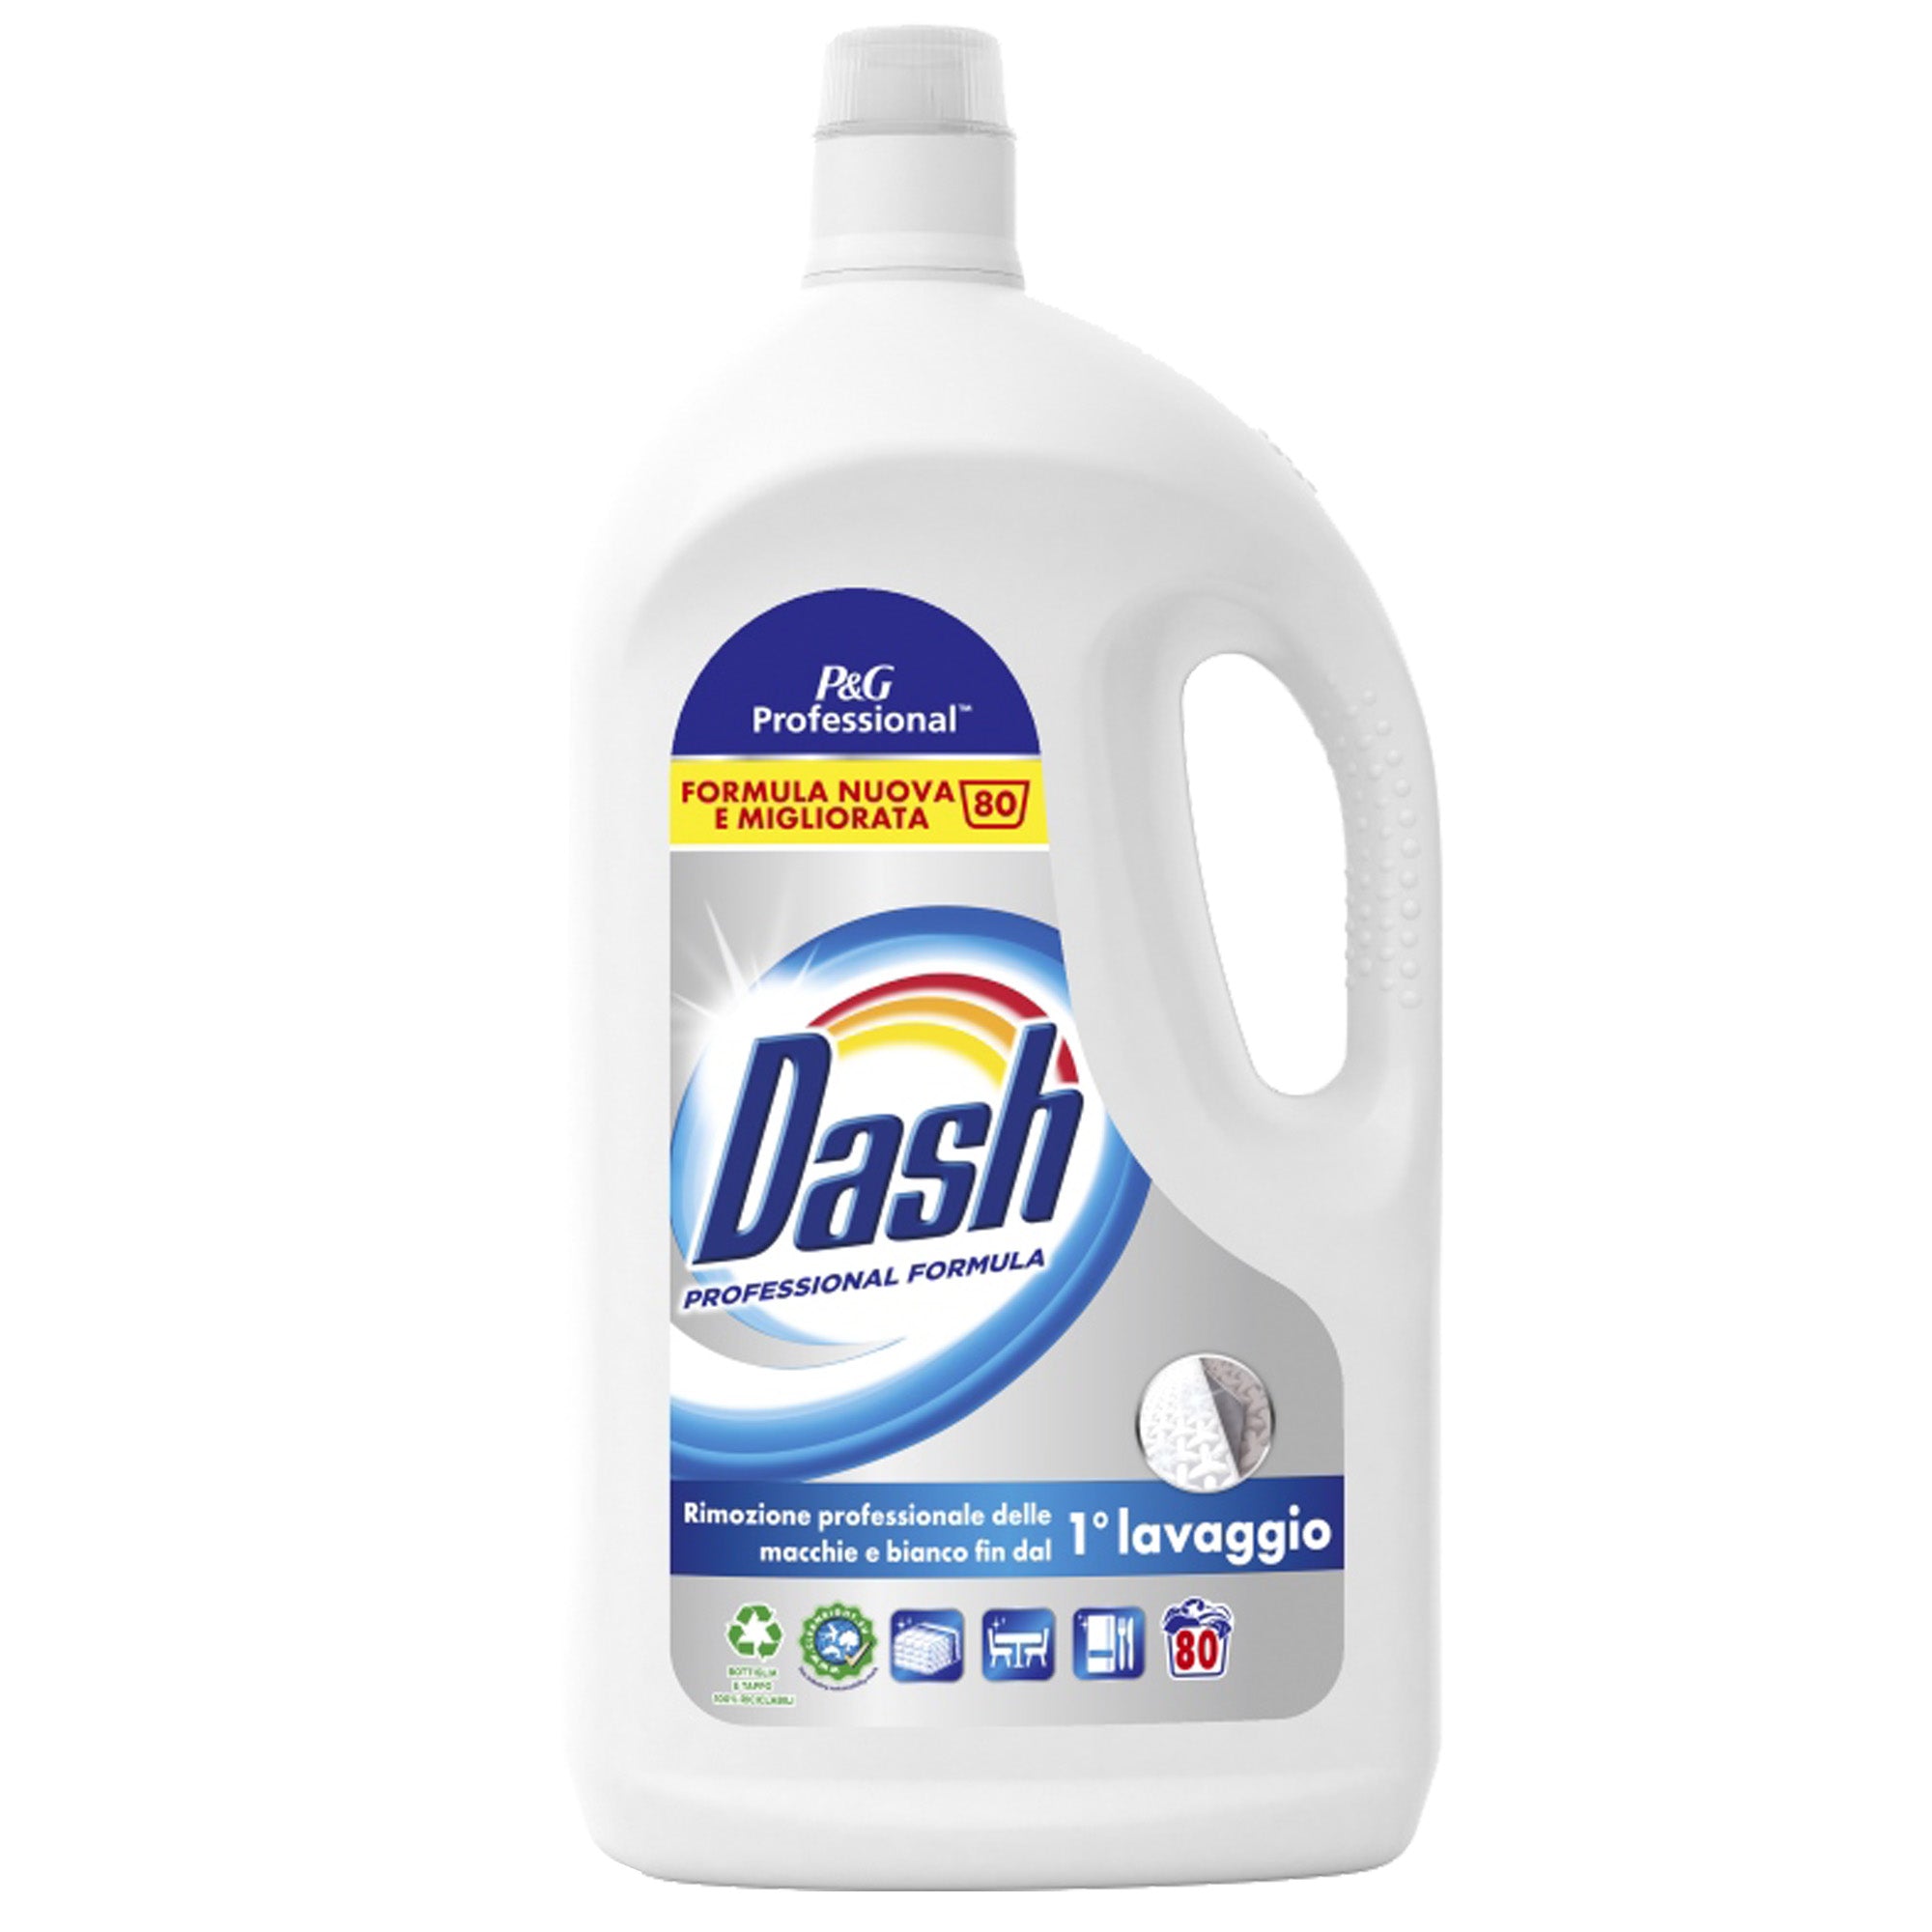 dash-liquido-professional-4-lt-80-lavaggi